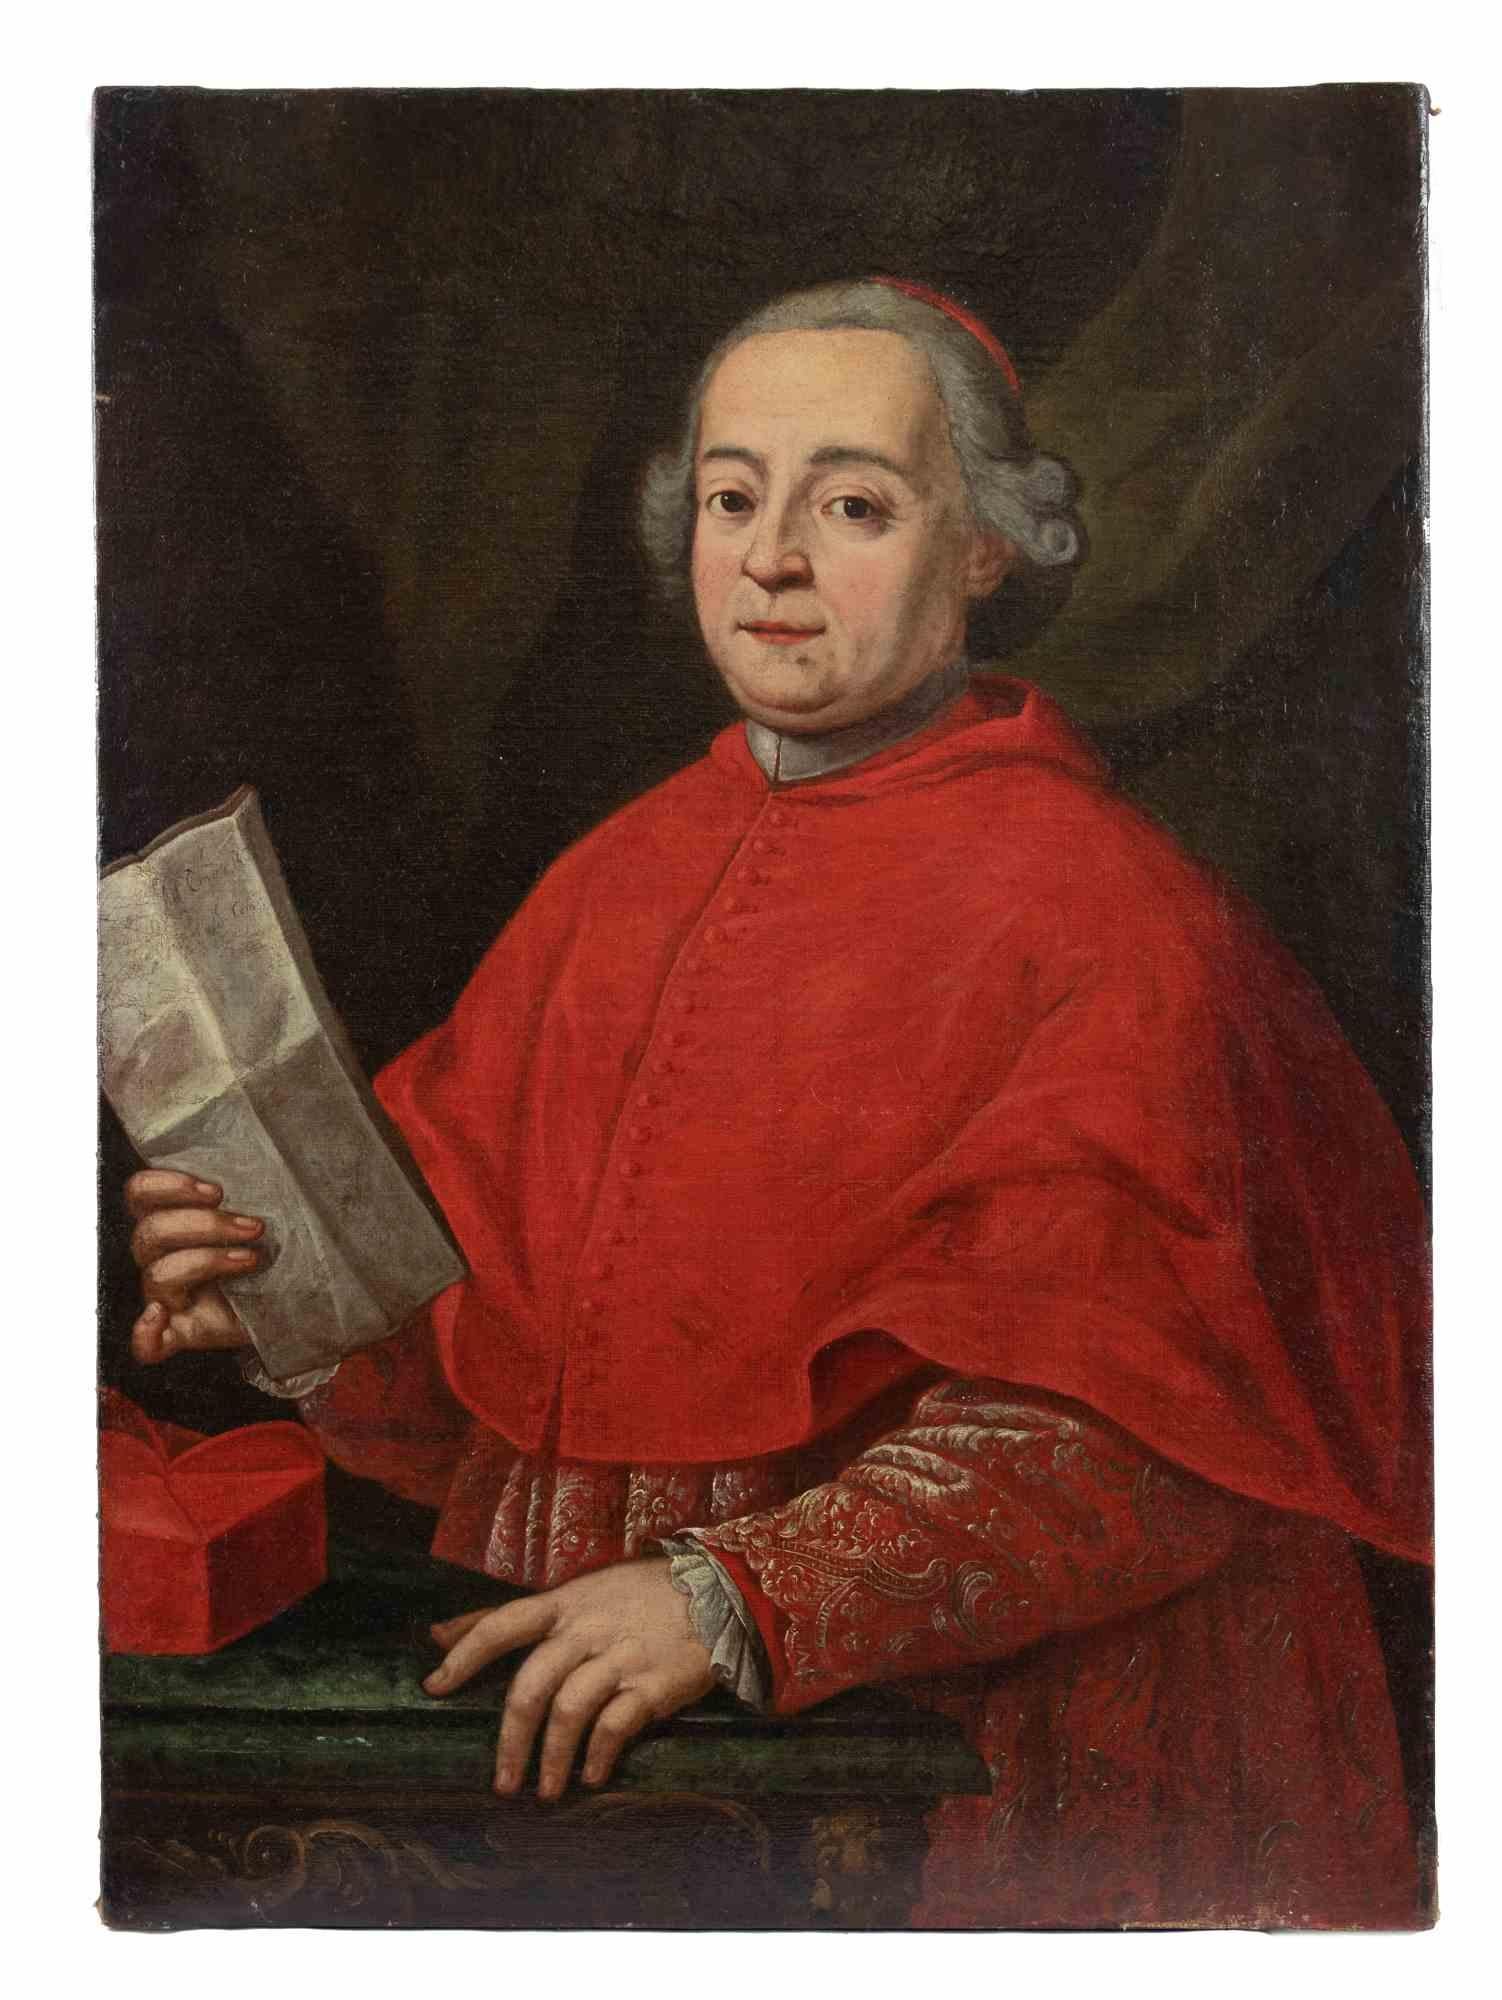 Kardinal mit Missive – Gemälde von Unbekanntem – 17. Jahrhundert